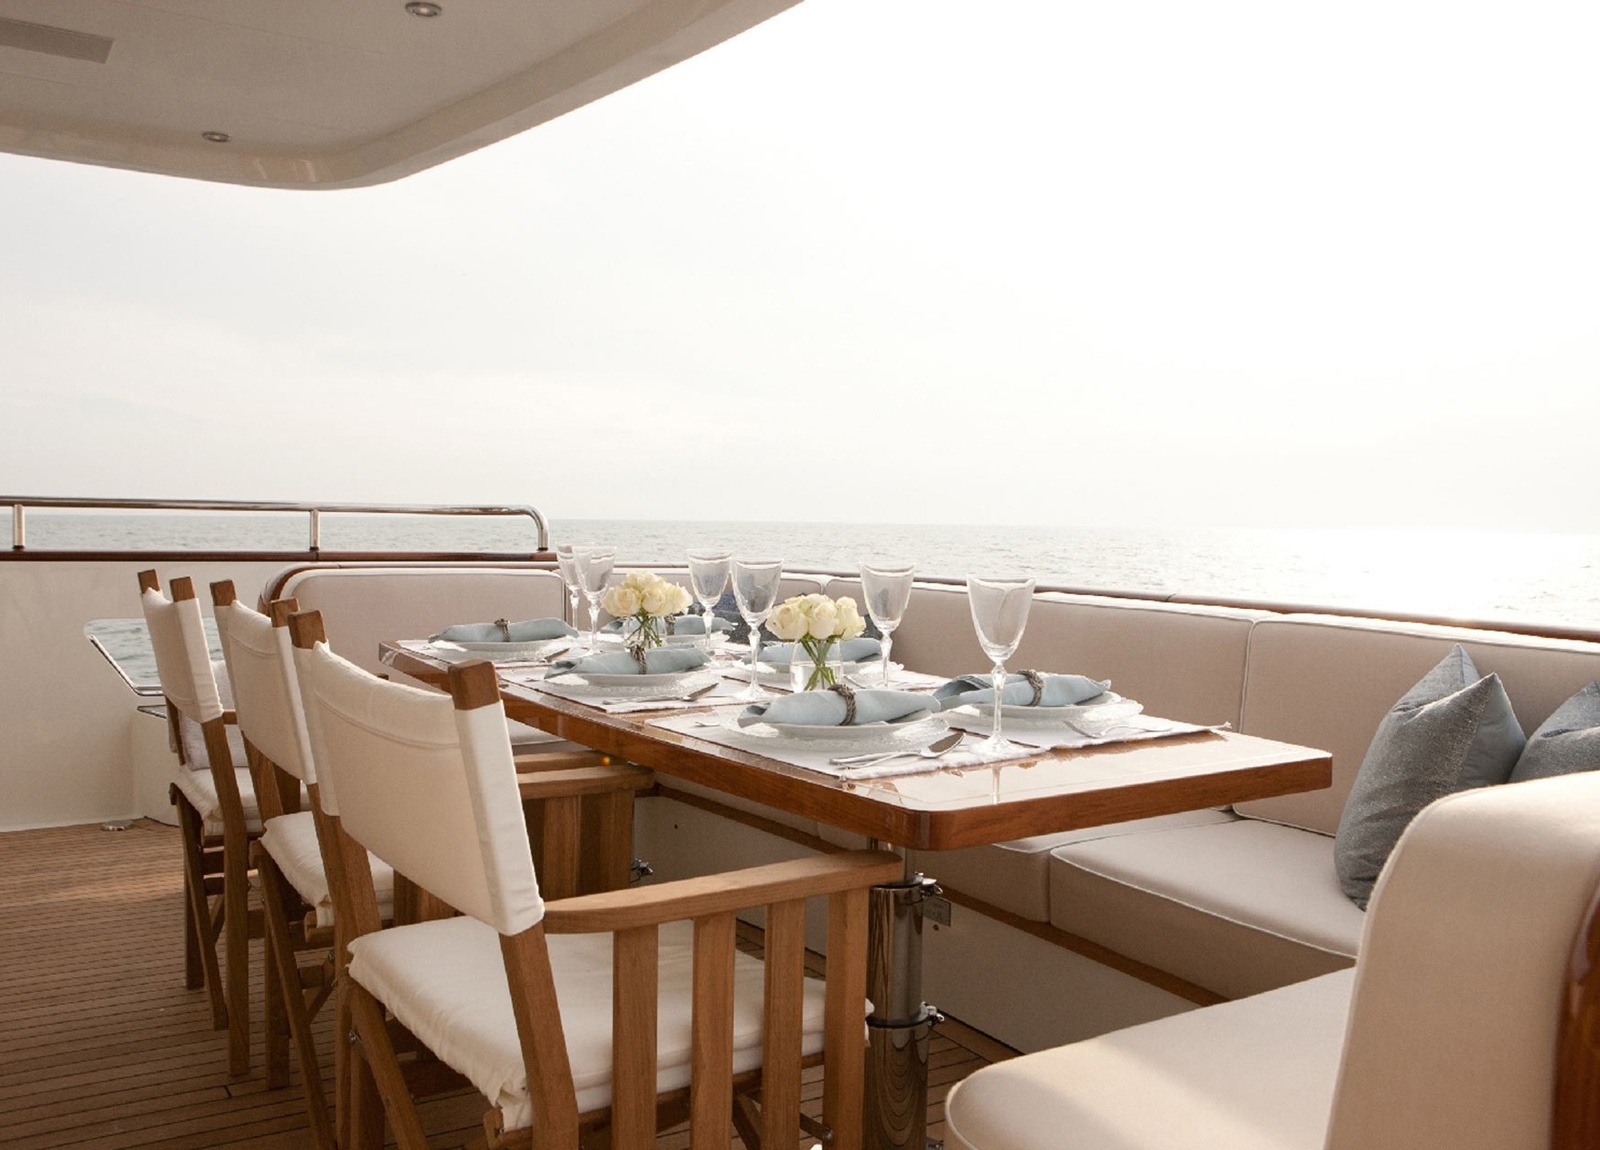 upperdeck luxury yacht mulder 286m firefly western mediterranean